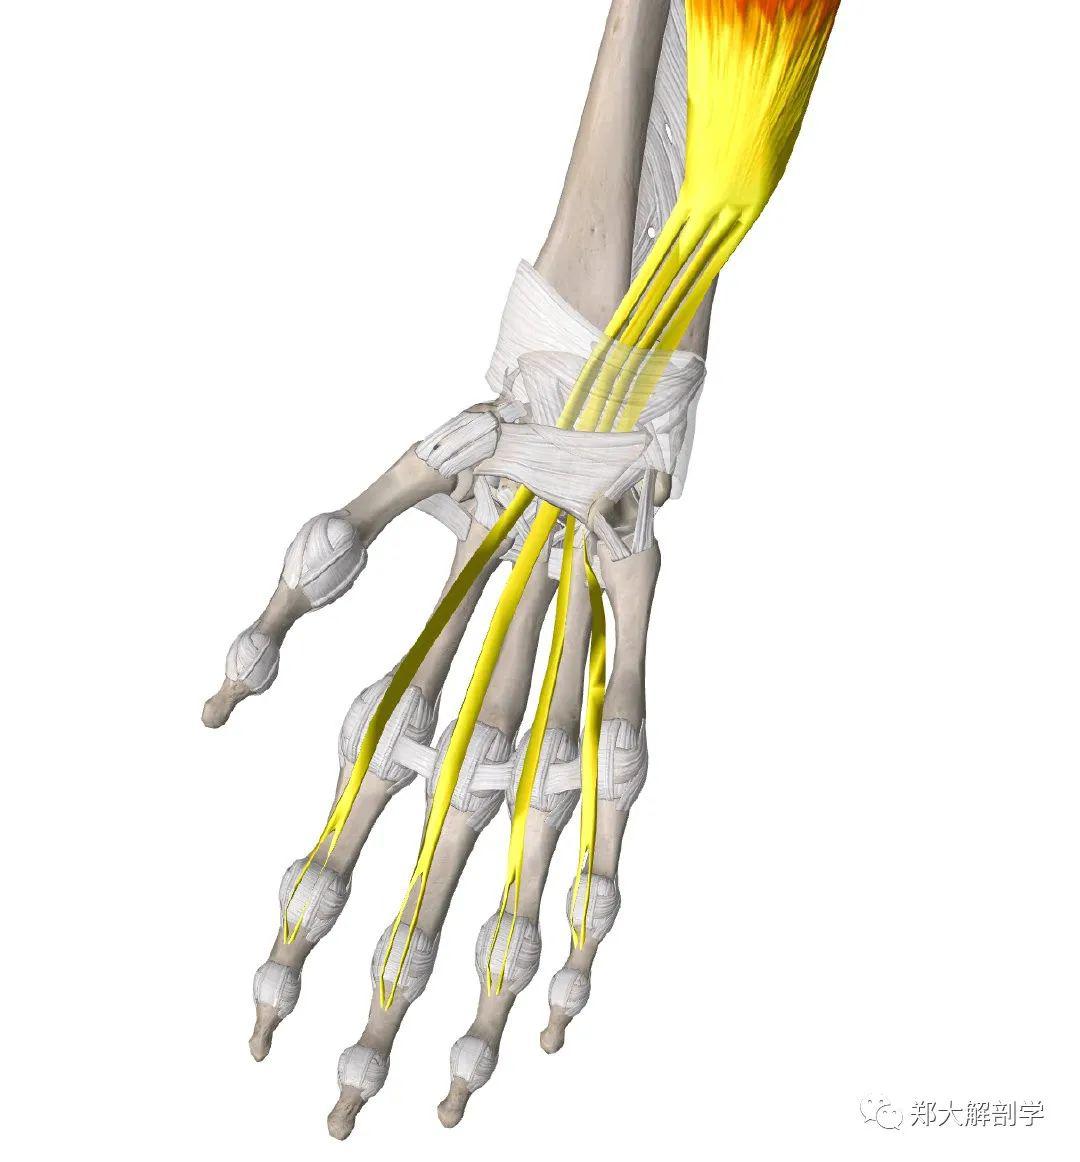 腕骨内容物包括指浅屈肌(4根肌腱,指深屈肌(4根肌腱,拇长屈肌(1根